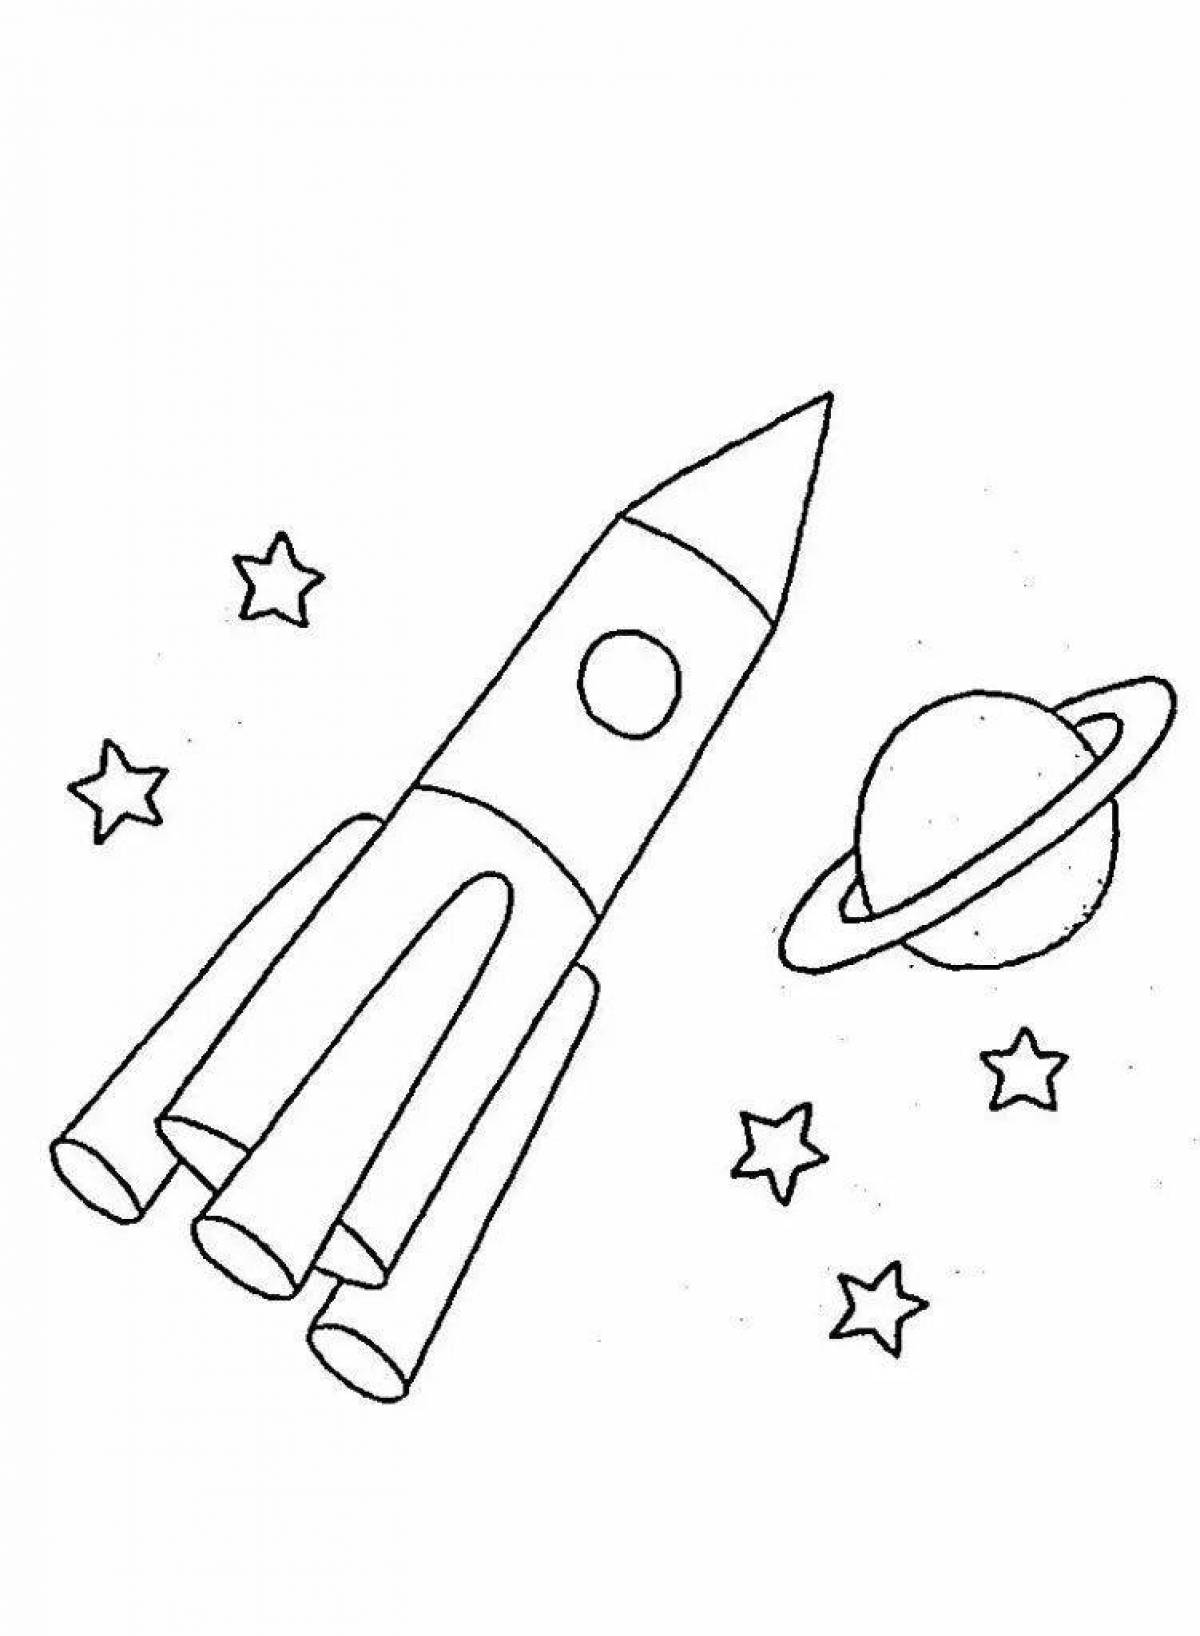 Раскраска ракета для детей 4 лет. Ракета раскраска для детей. Космос раскраска для детей. Раскраска для малышей. Космос. Космическая ракета раскраска для детей.